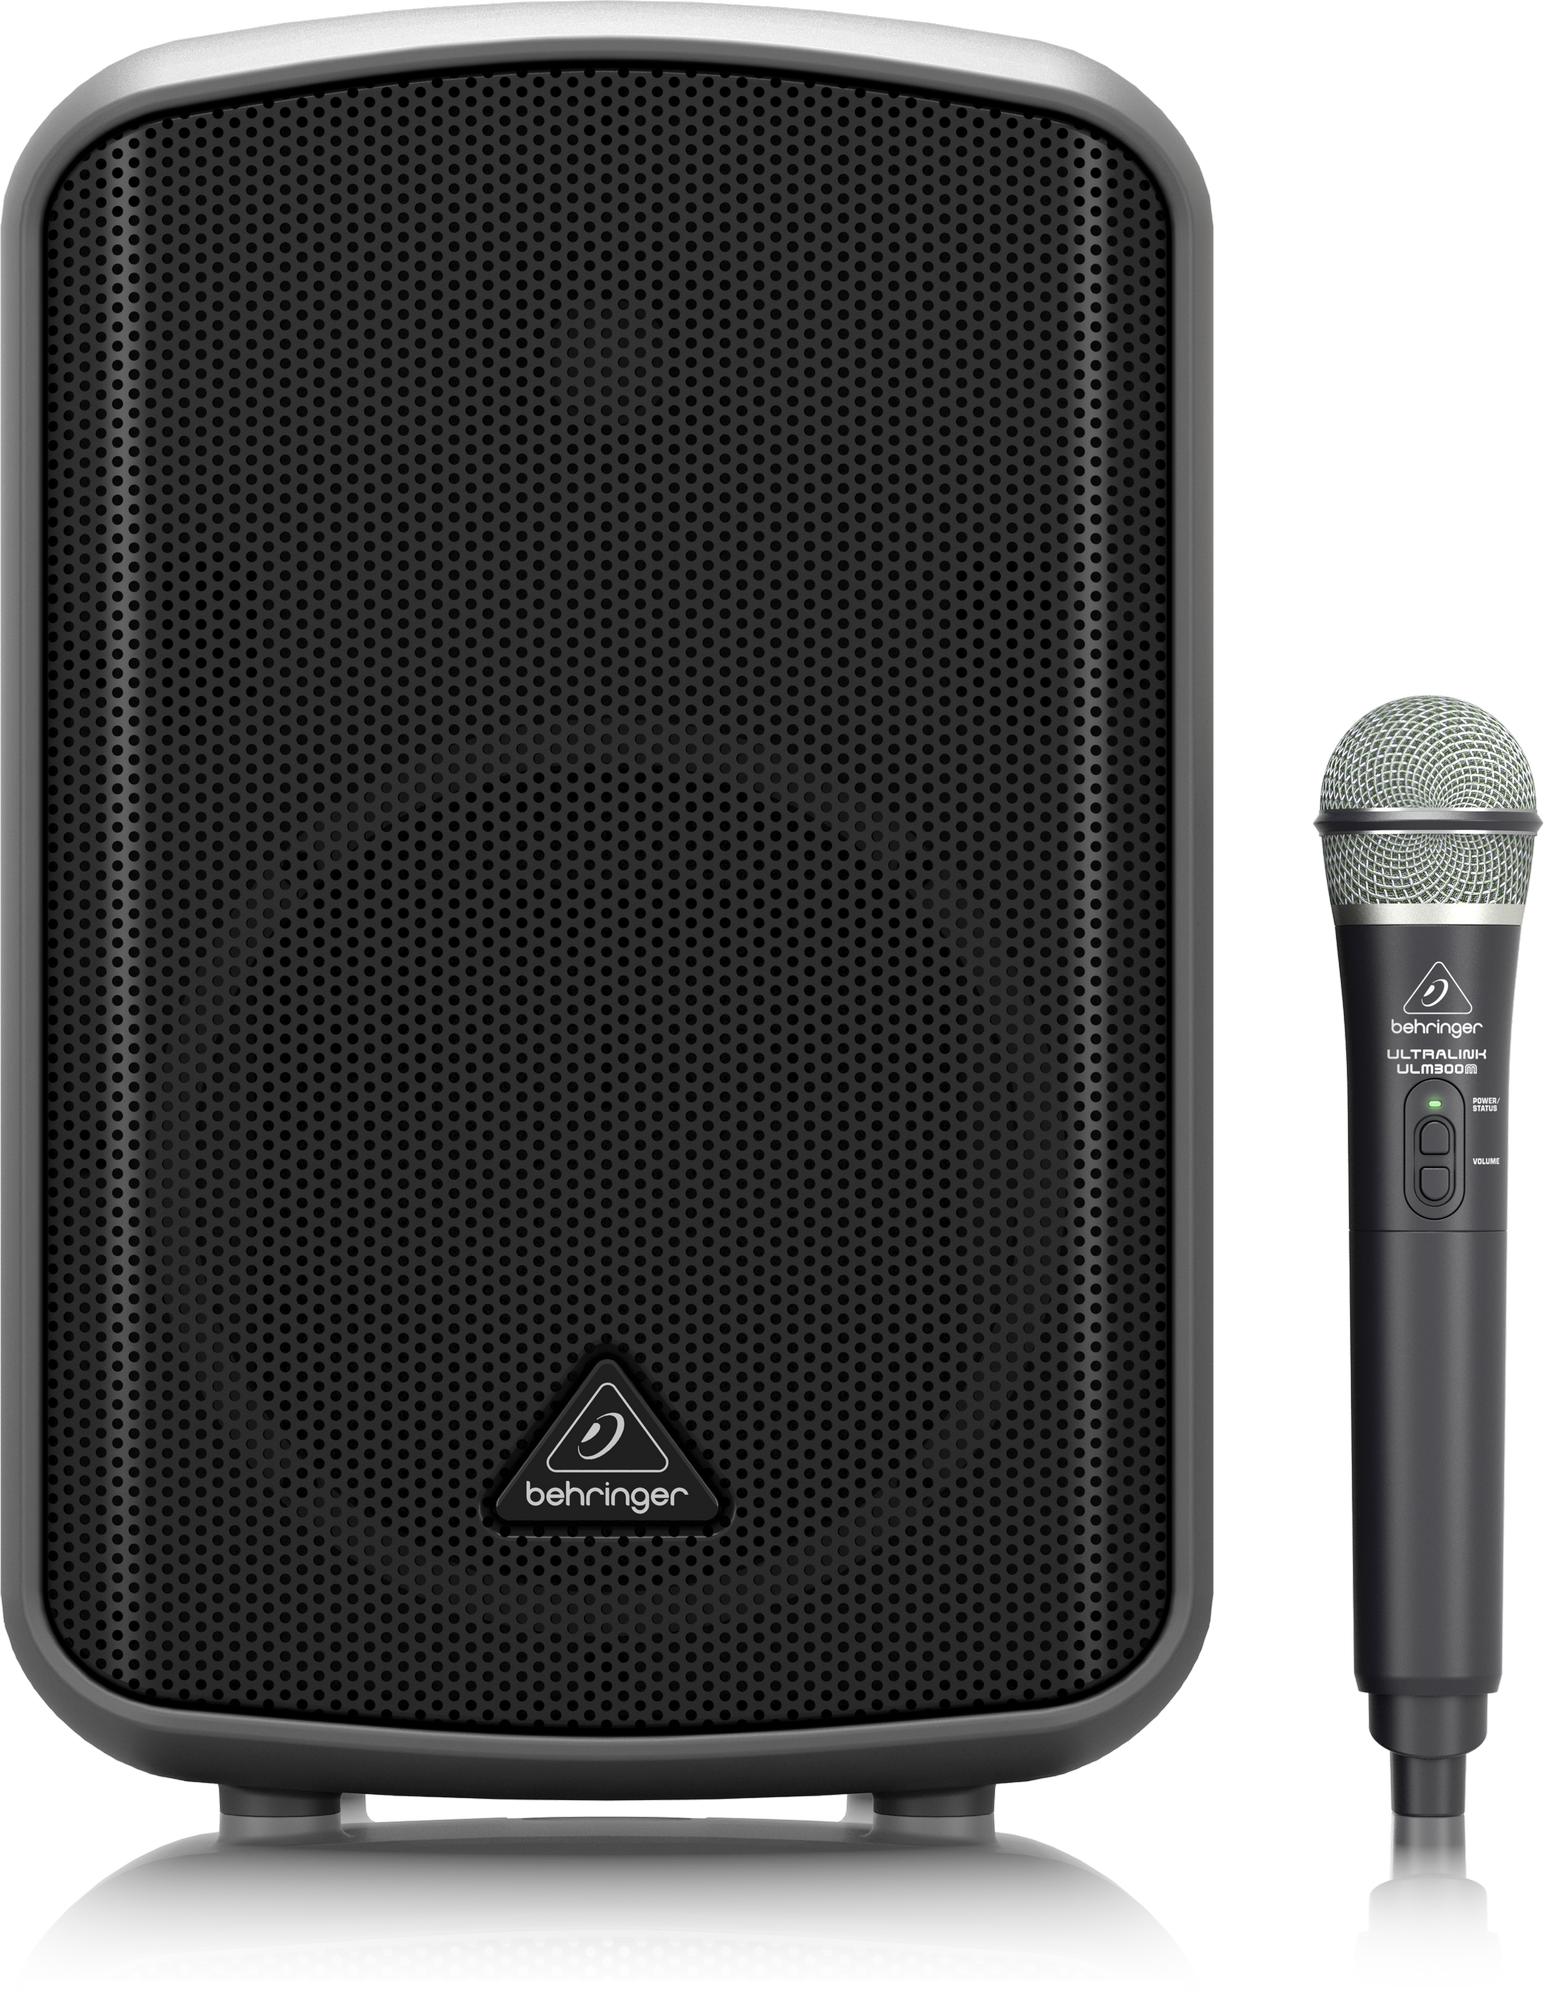 BEHRINGER MPA200BT - портативная система звукоусиления, 200 Вт, НЧ 8", ВЧ 1", Bluetooth купить в prostore.me